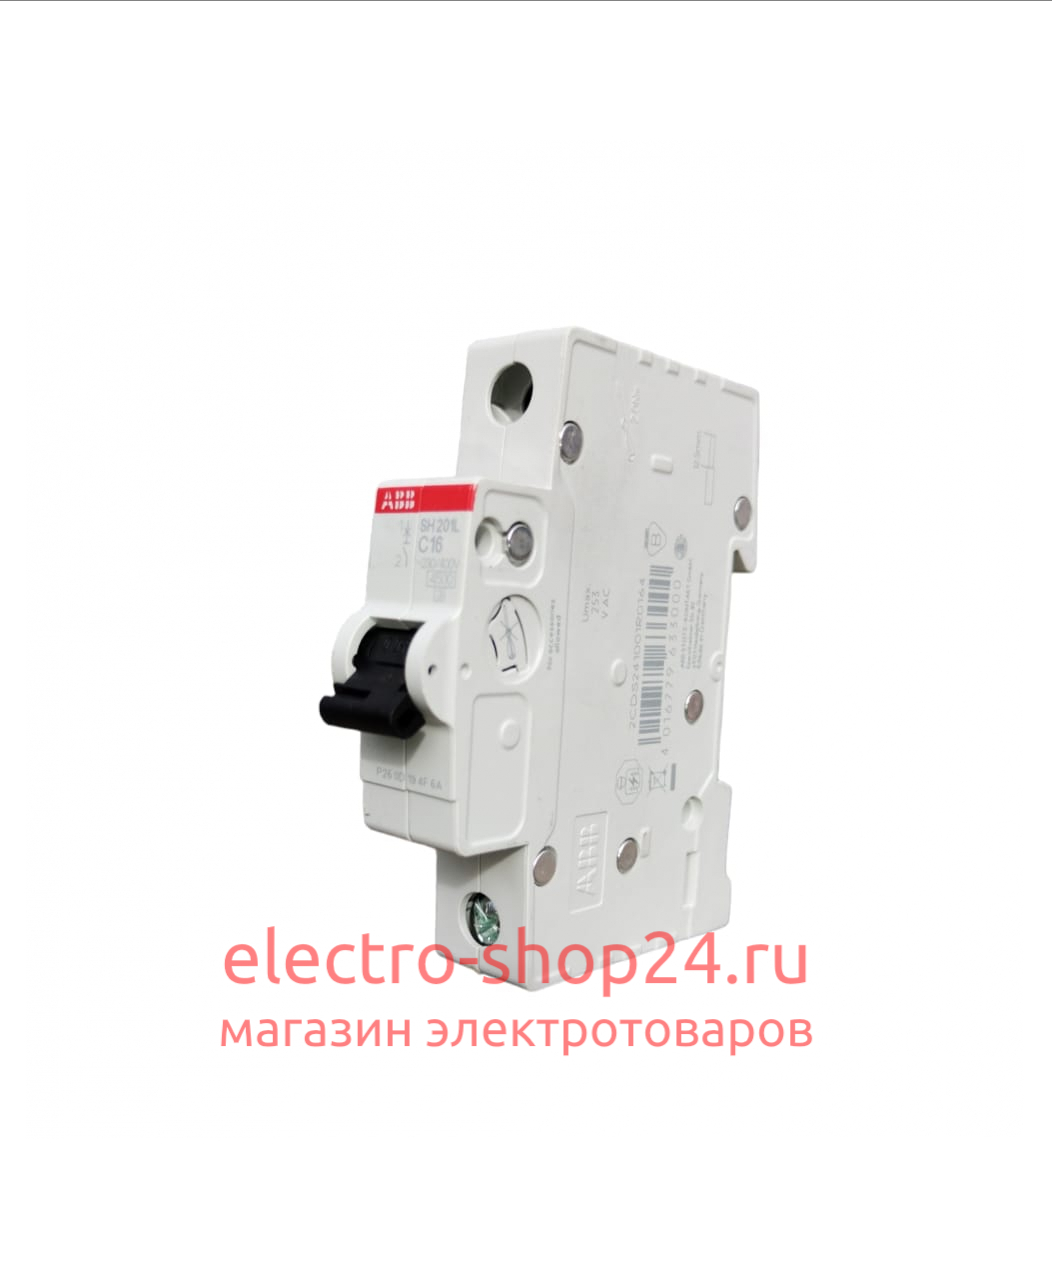 SH201 C16 Автоматический выключатель 1-полюсный 16А 6кА (хар-ка C) ABB 2CDS211001R0164 2CDS211001R0164 - магазин электротехники Electroshop